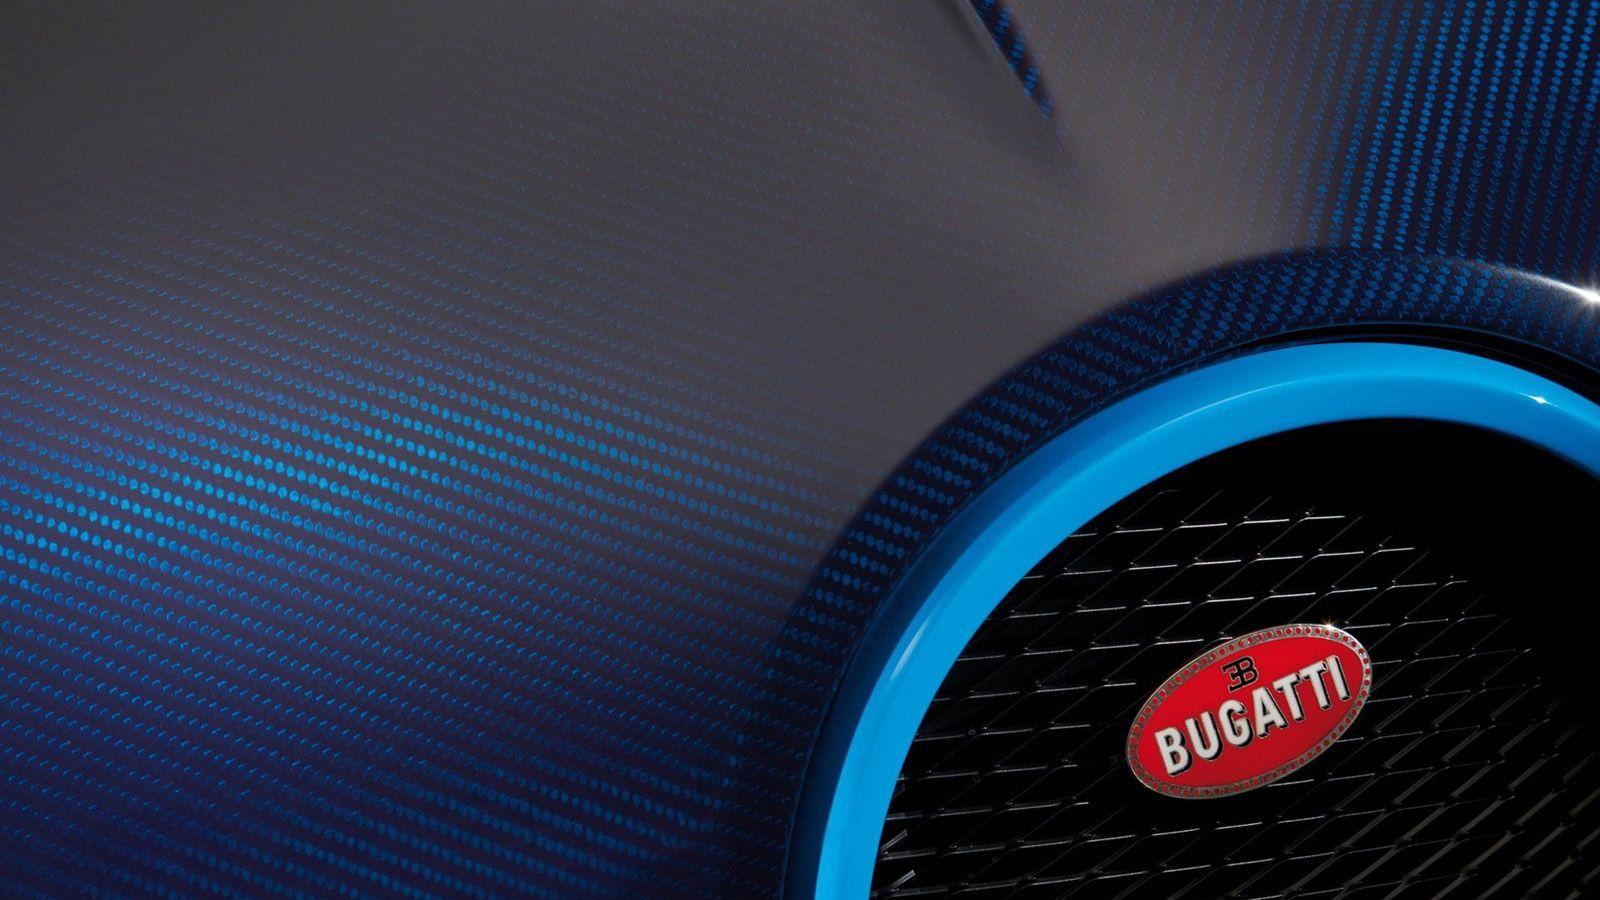 Bugatti Veyron HD desktop wallpaper, Widescreen, High Definition